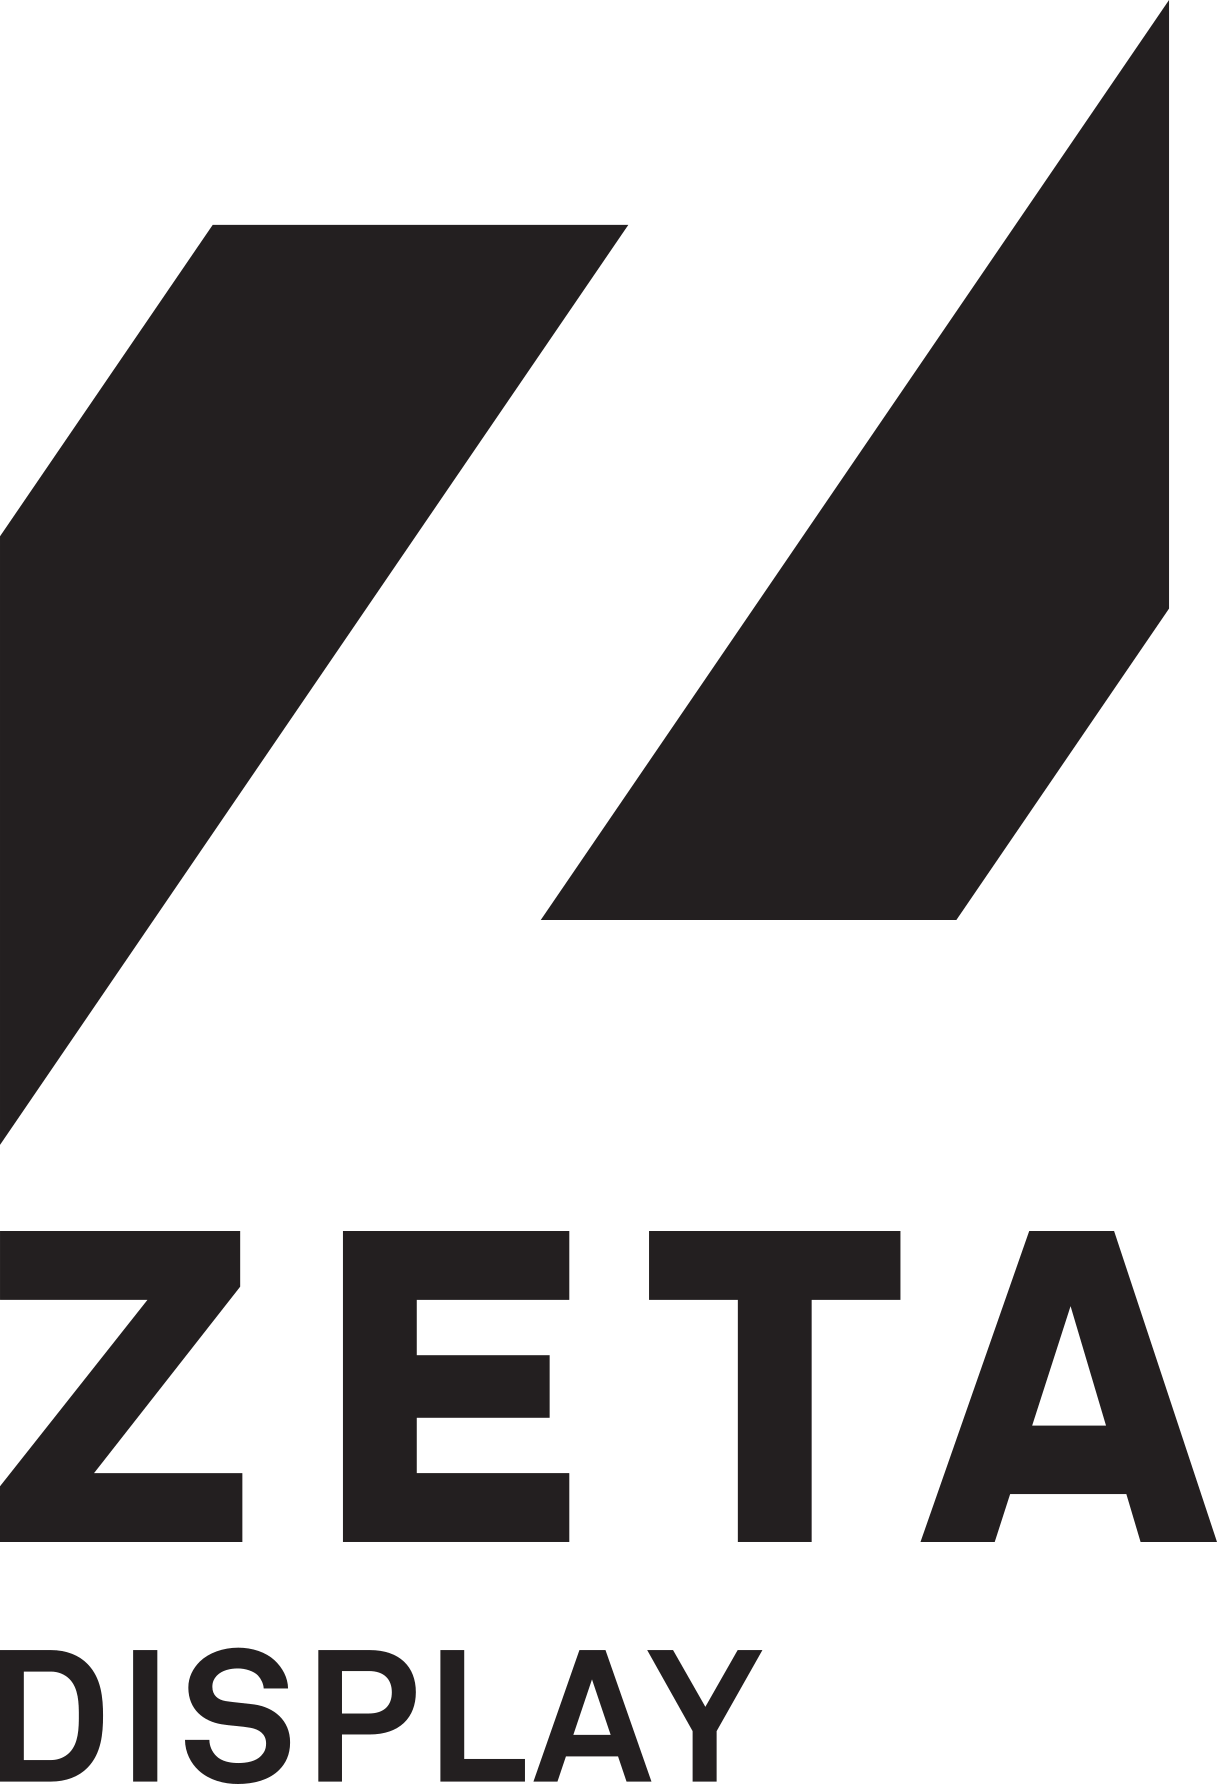 Zeta Display